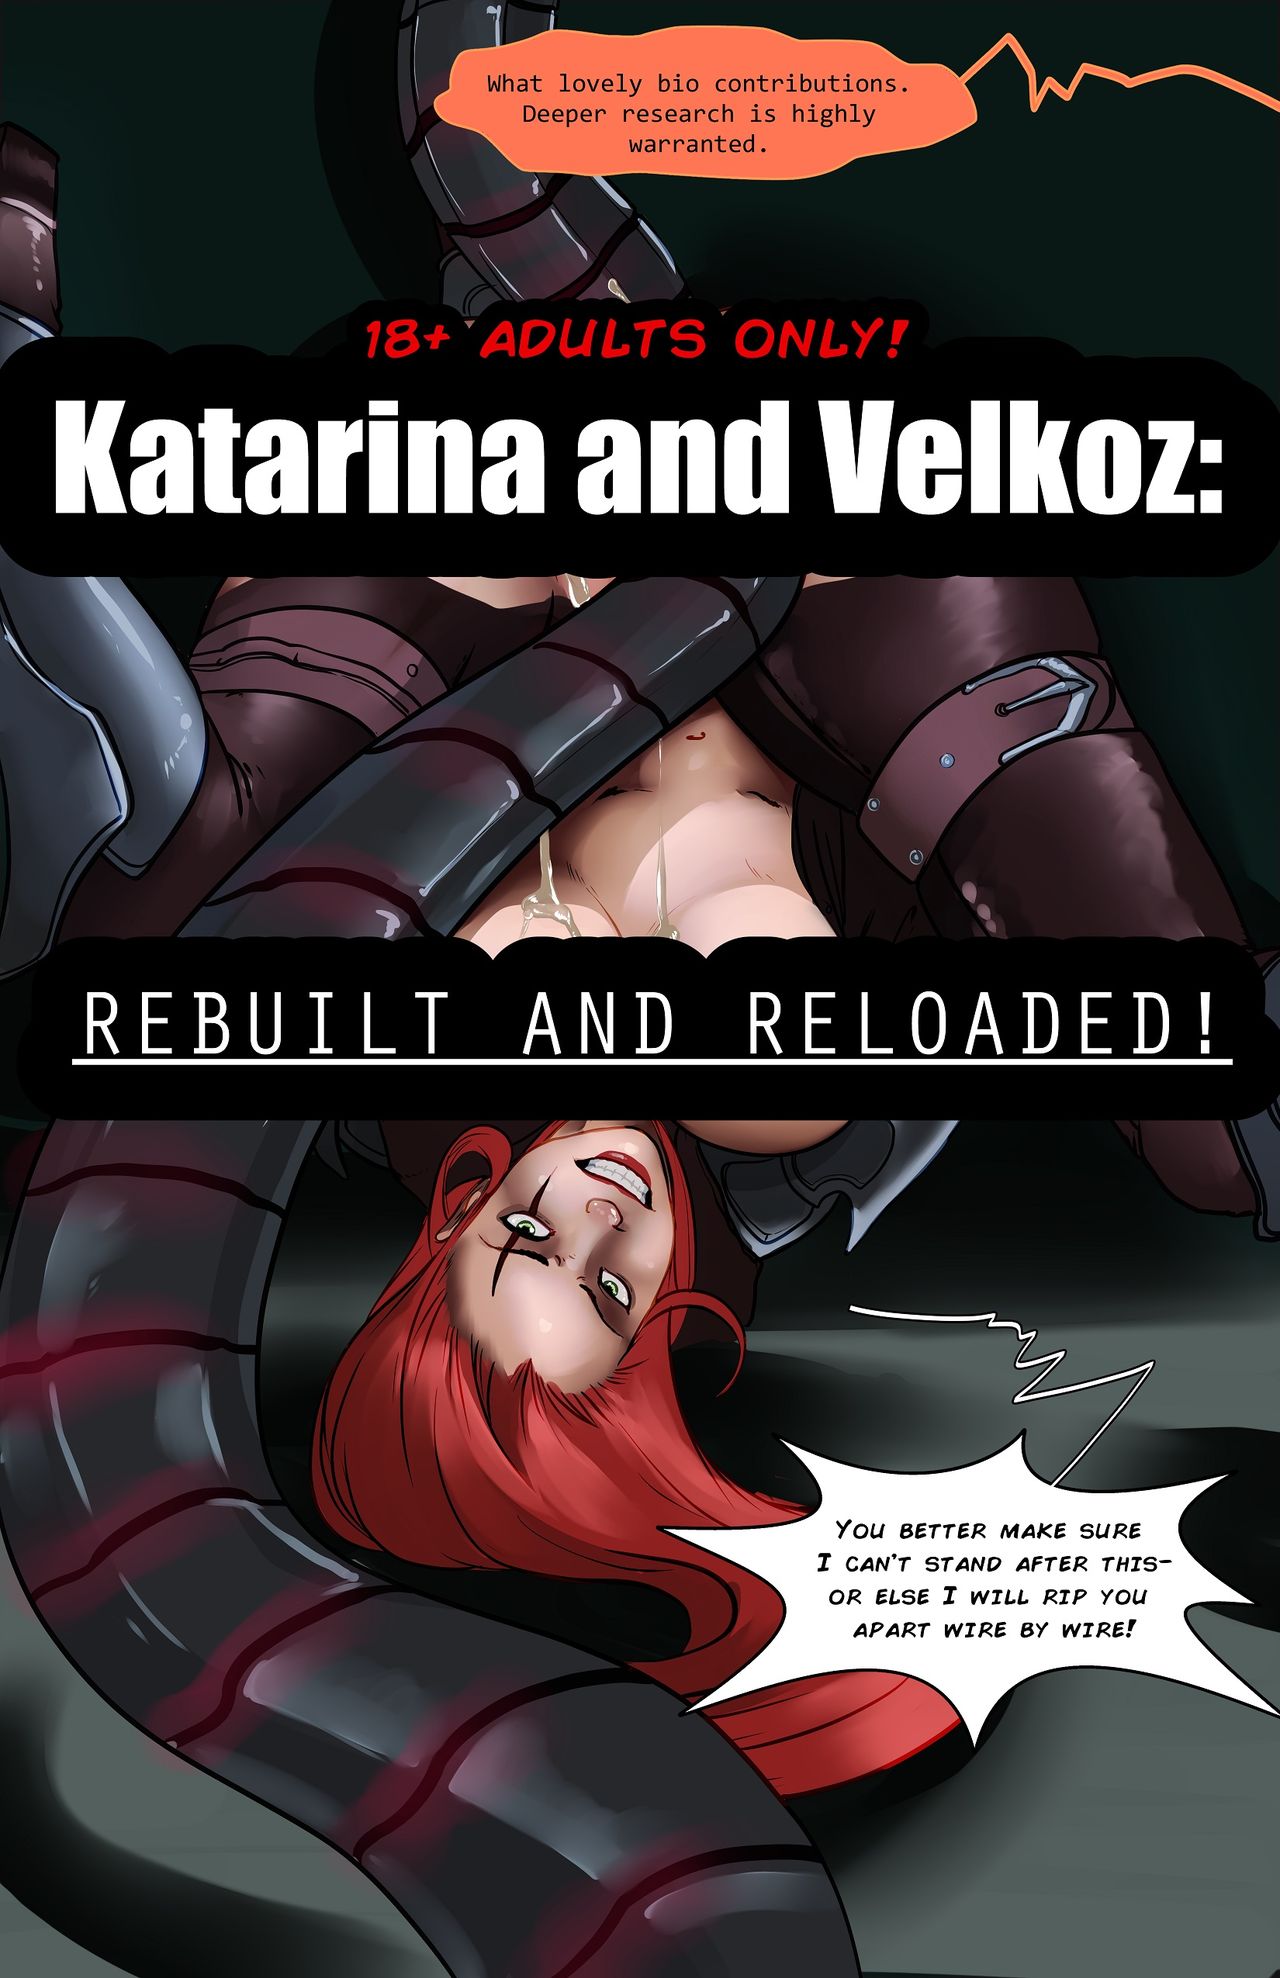 Katarina và velkoz xây dựng lại nạp lại